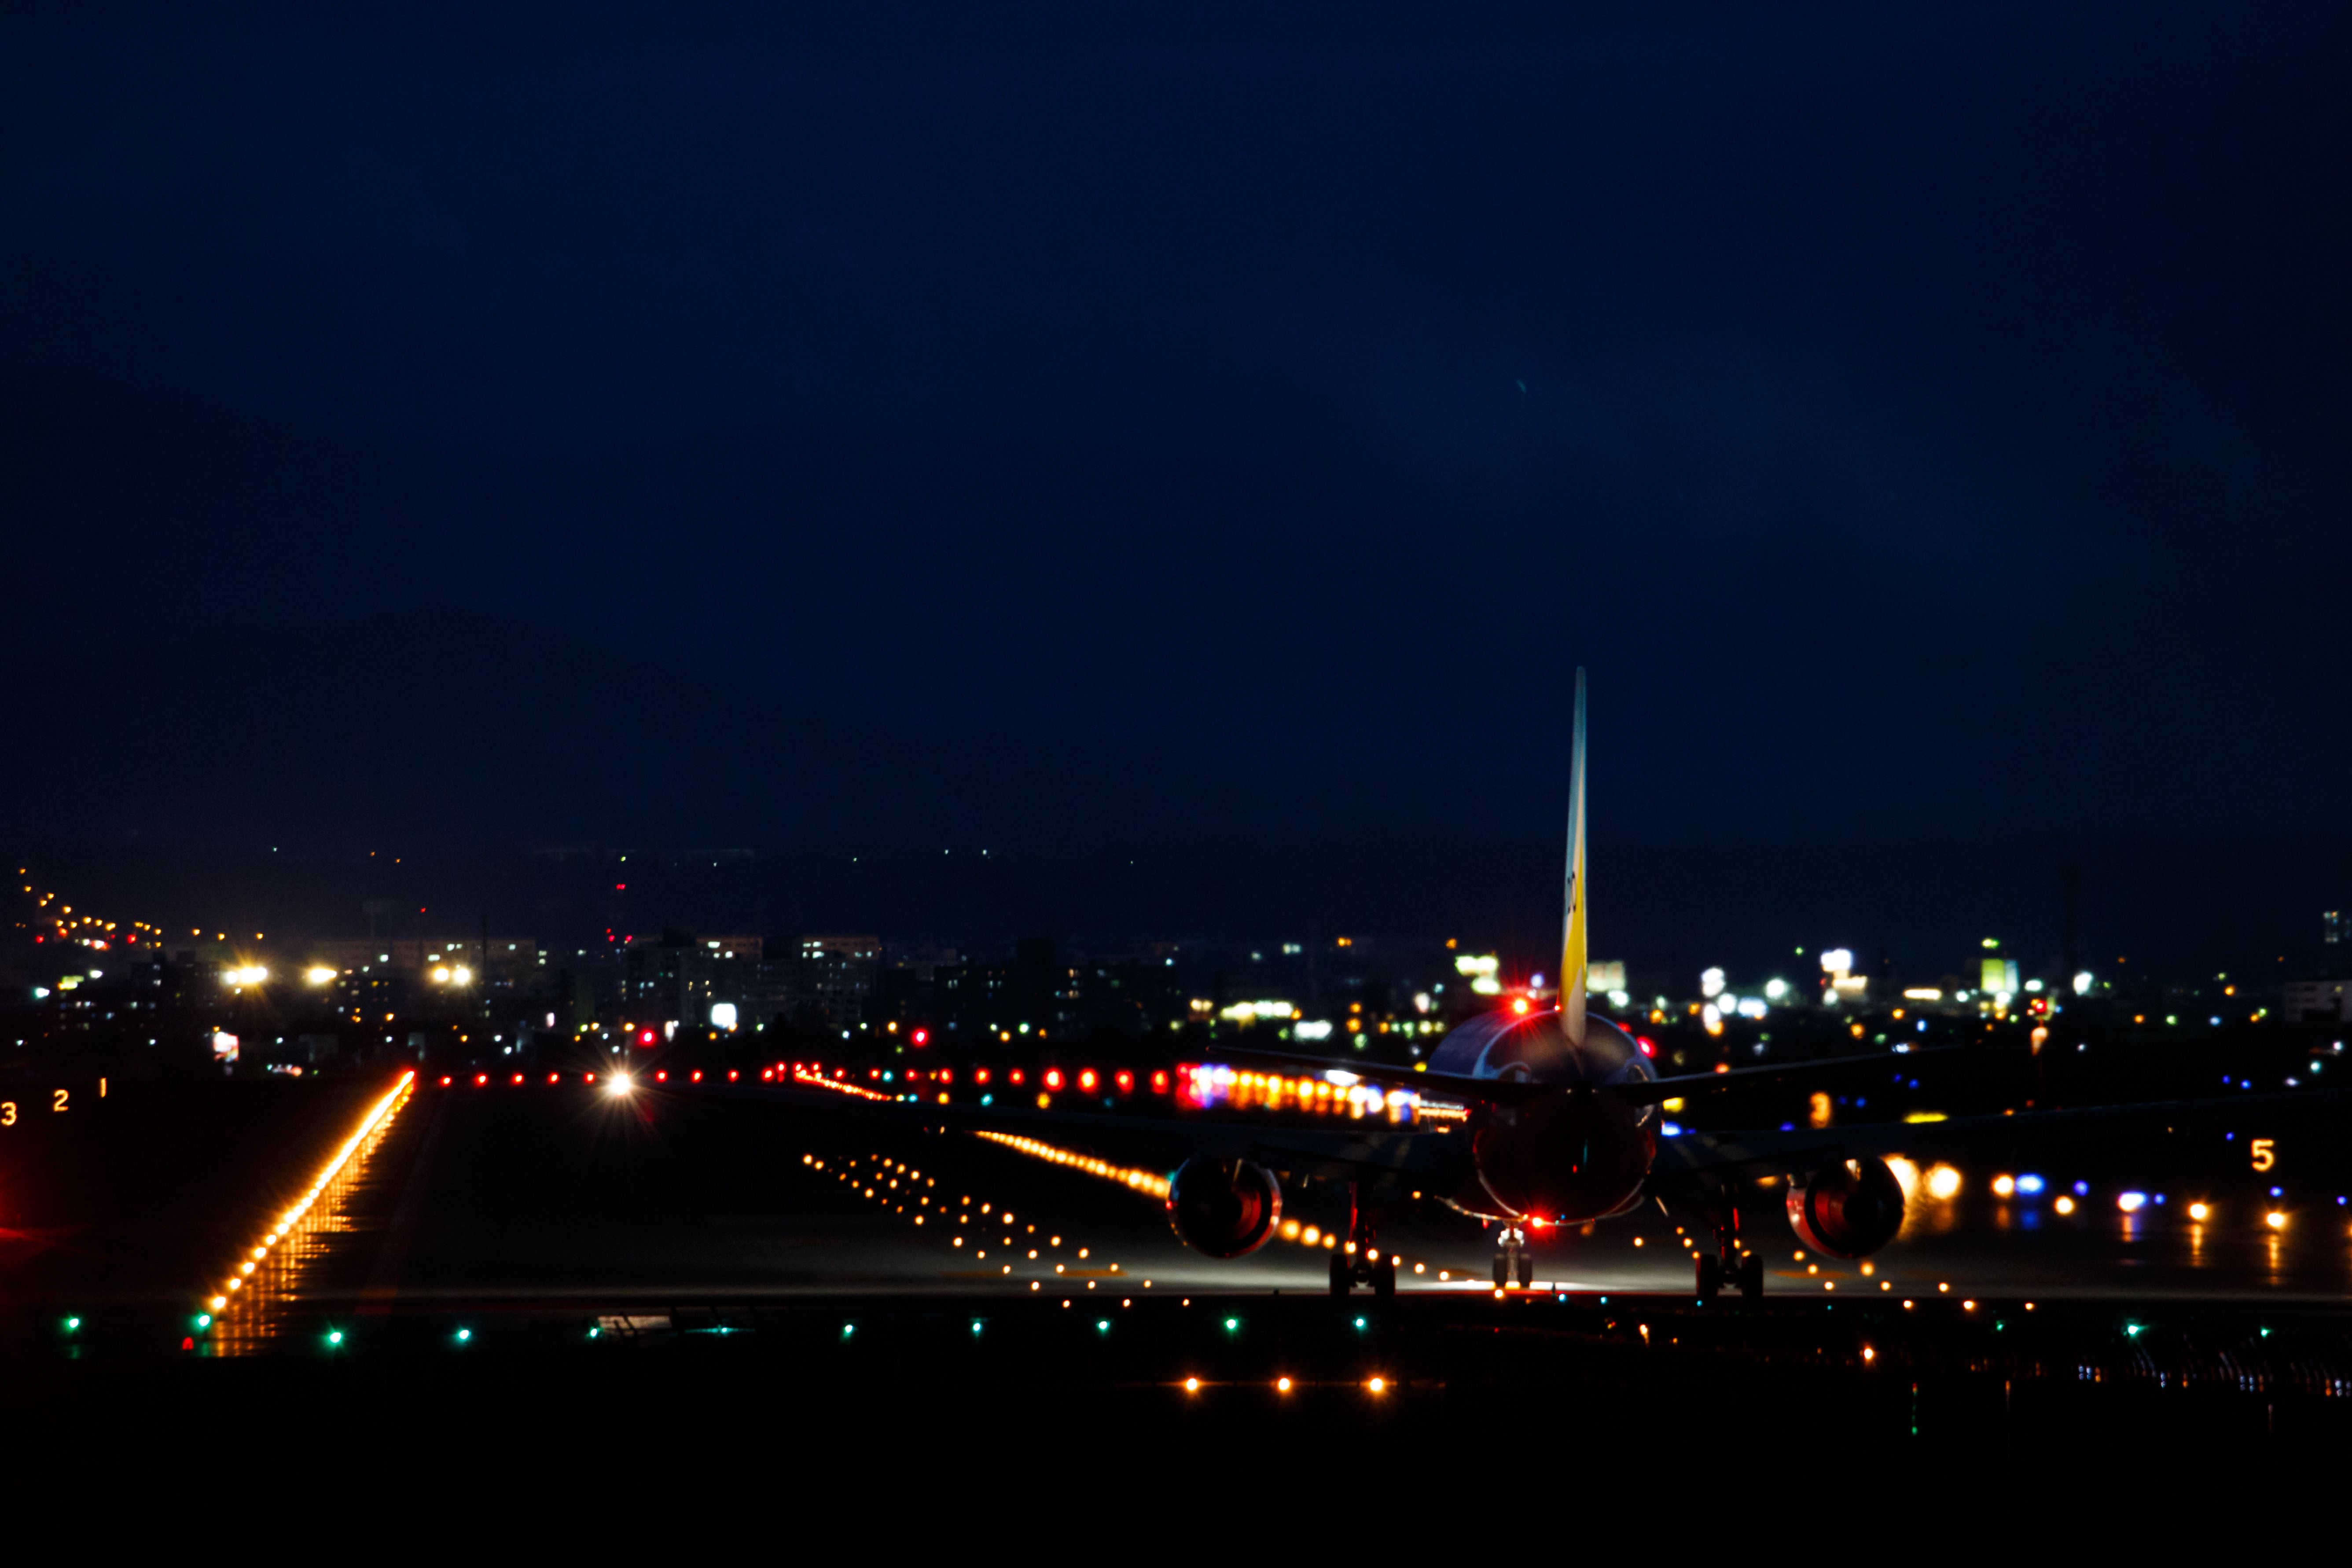 伊丹空港 展望デッキからの夕景・夜景 大阪 at Night ブログ